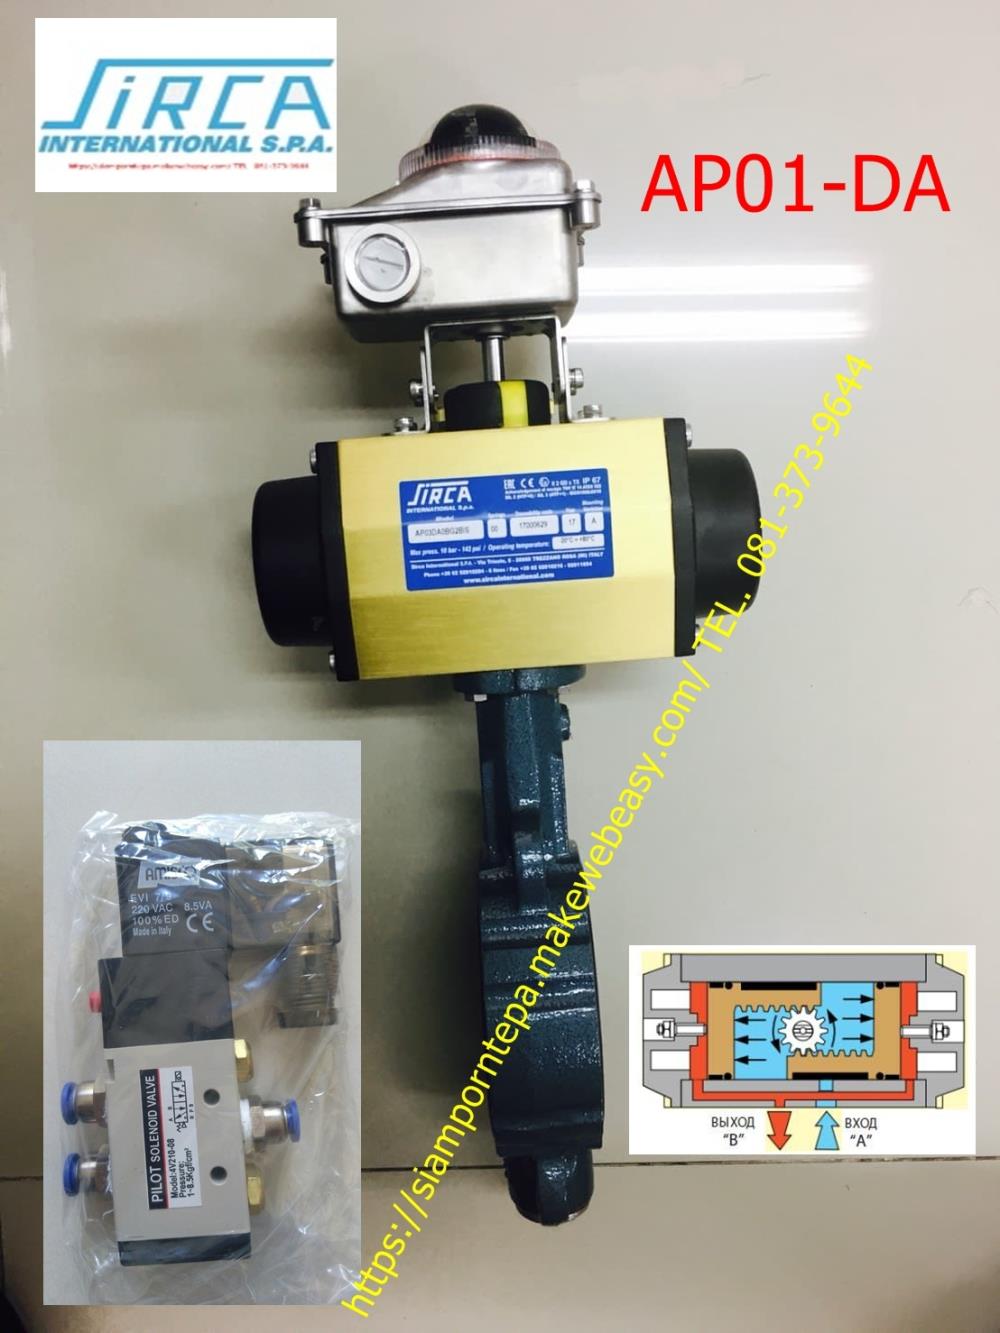 AP01-DA  Sirca actuator หัวขับลม ใช้กับ Ebro Buttefly valve size 2"- 4" pressure 0-16bar control 0-10bar เปิด-ปิด น้ำ น้ำมัน กากอาหาร น้ำจิ้ม ก้อนปุ๋ย ต่างๆ ส่งฟรี